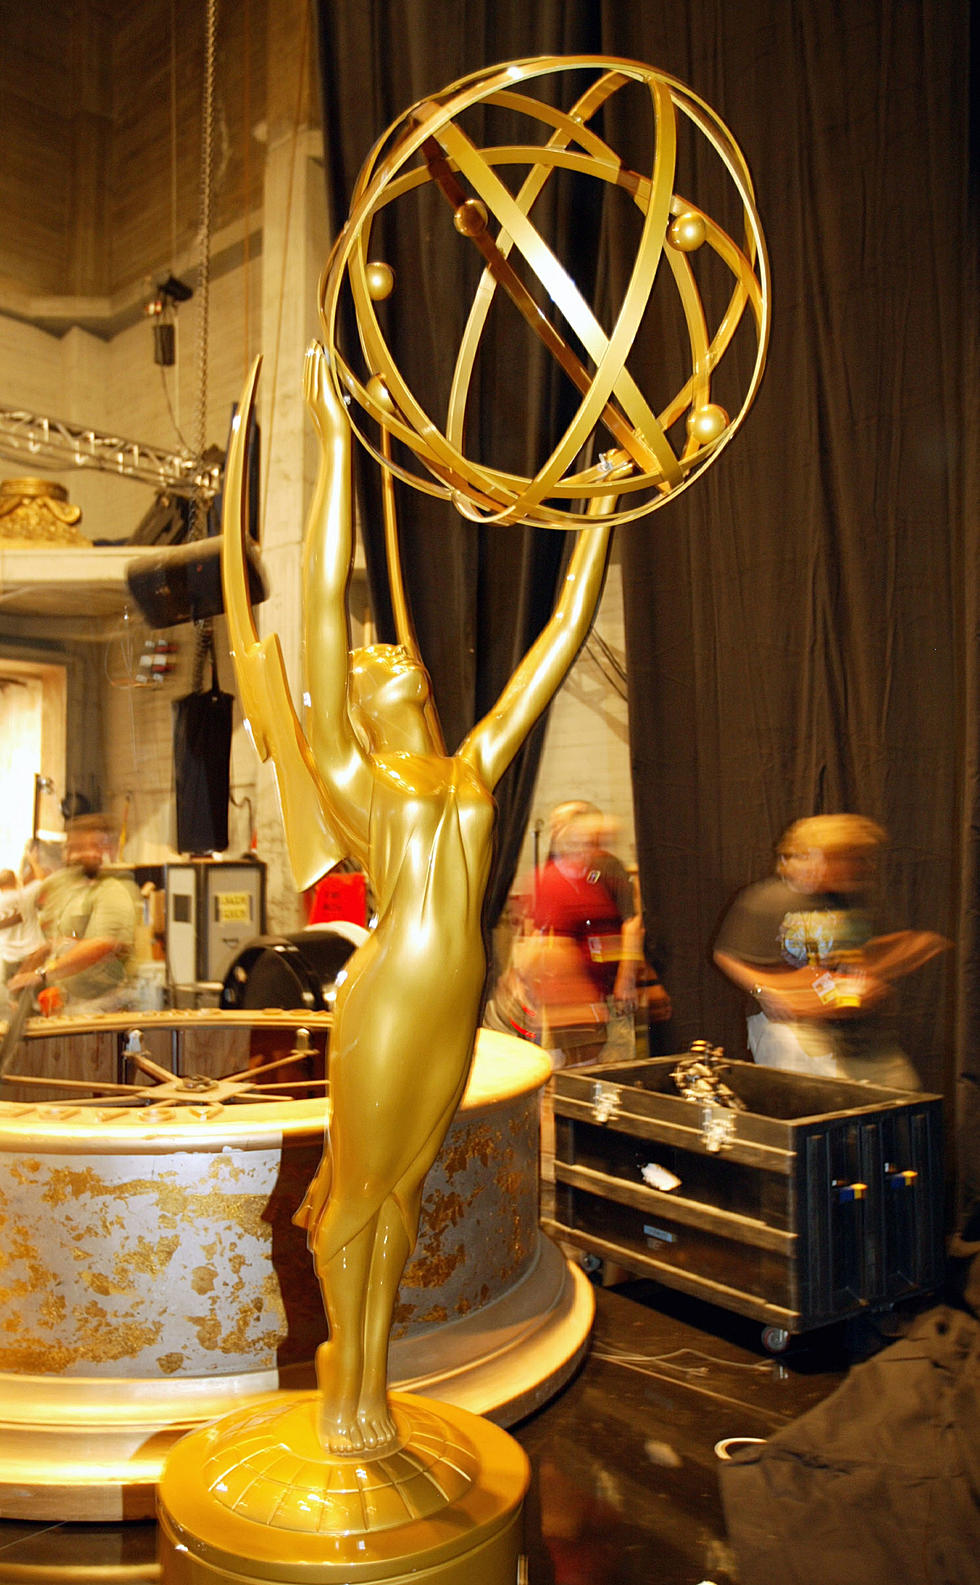 Emmy Winner Stabs Roommate over Oscars